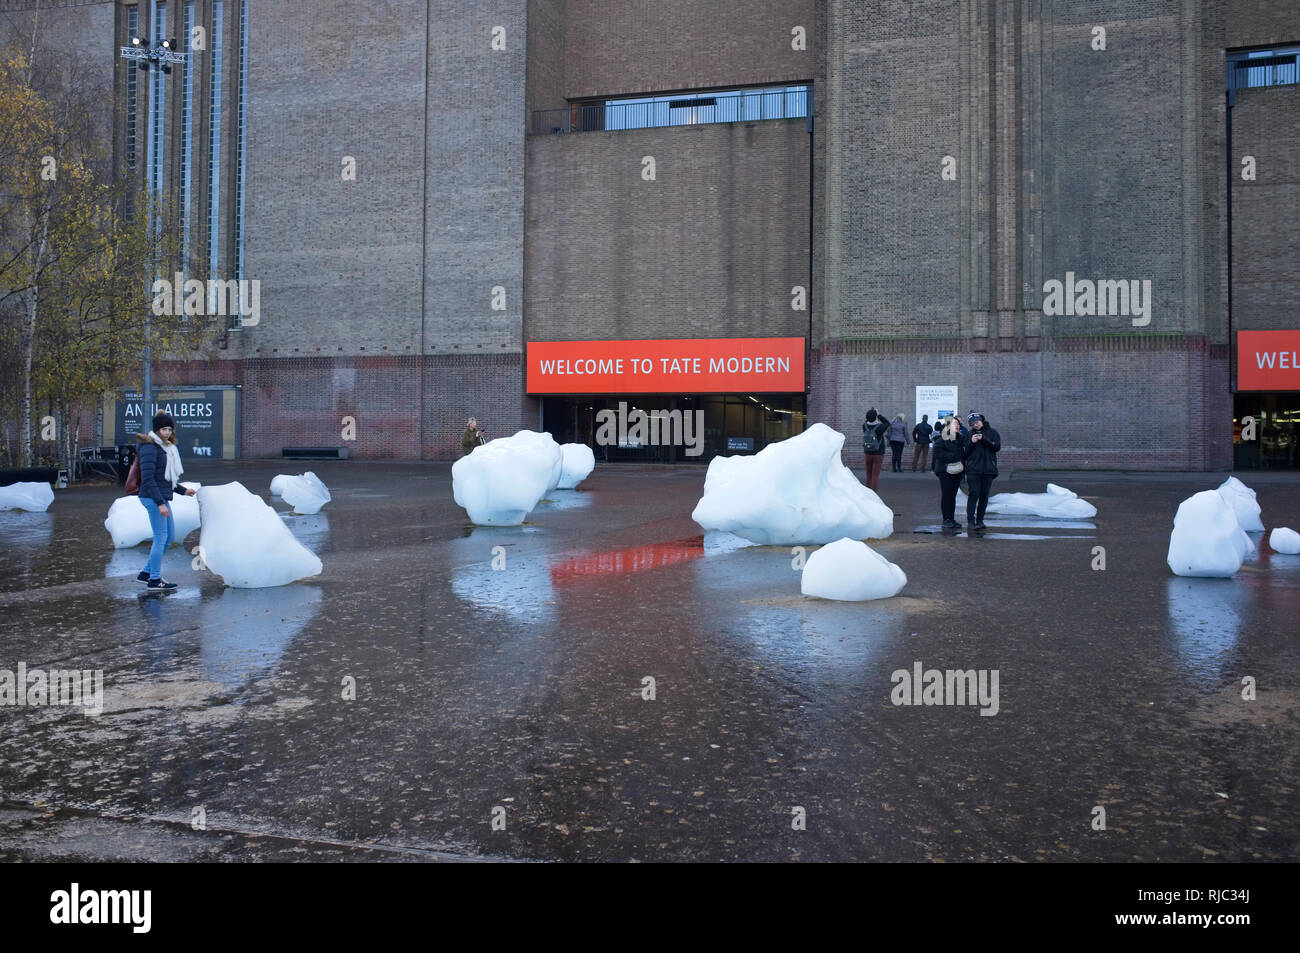 Olafur Eliasson et Minik Rosing installé 'Ice Watch' pour mettre en évidence le changement climatique en raison de la fonte des glaciers Banque D'Images